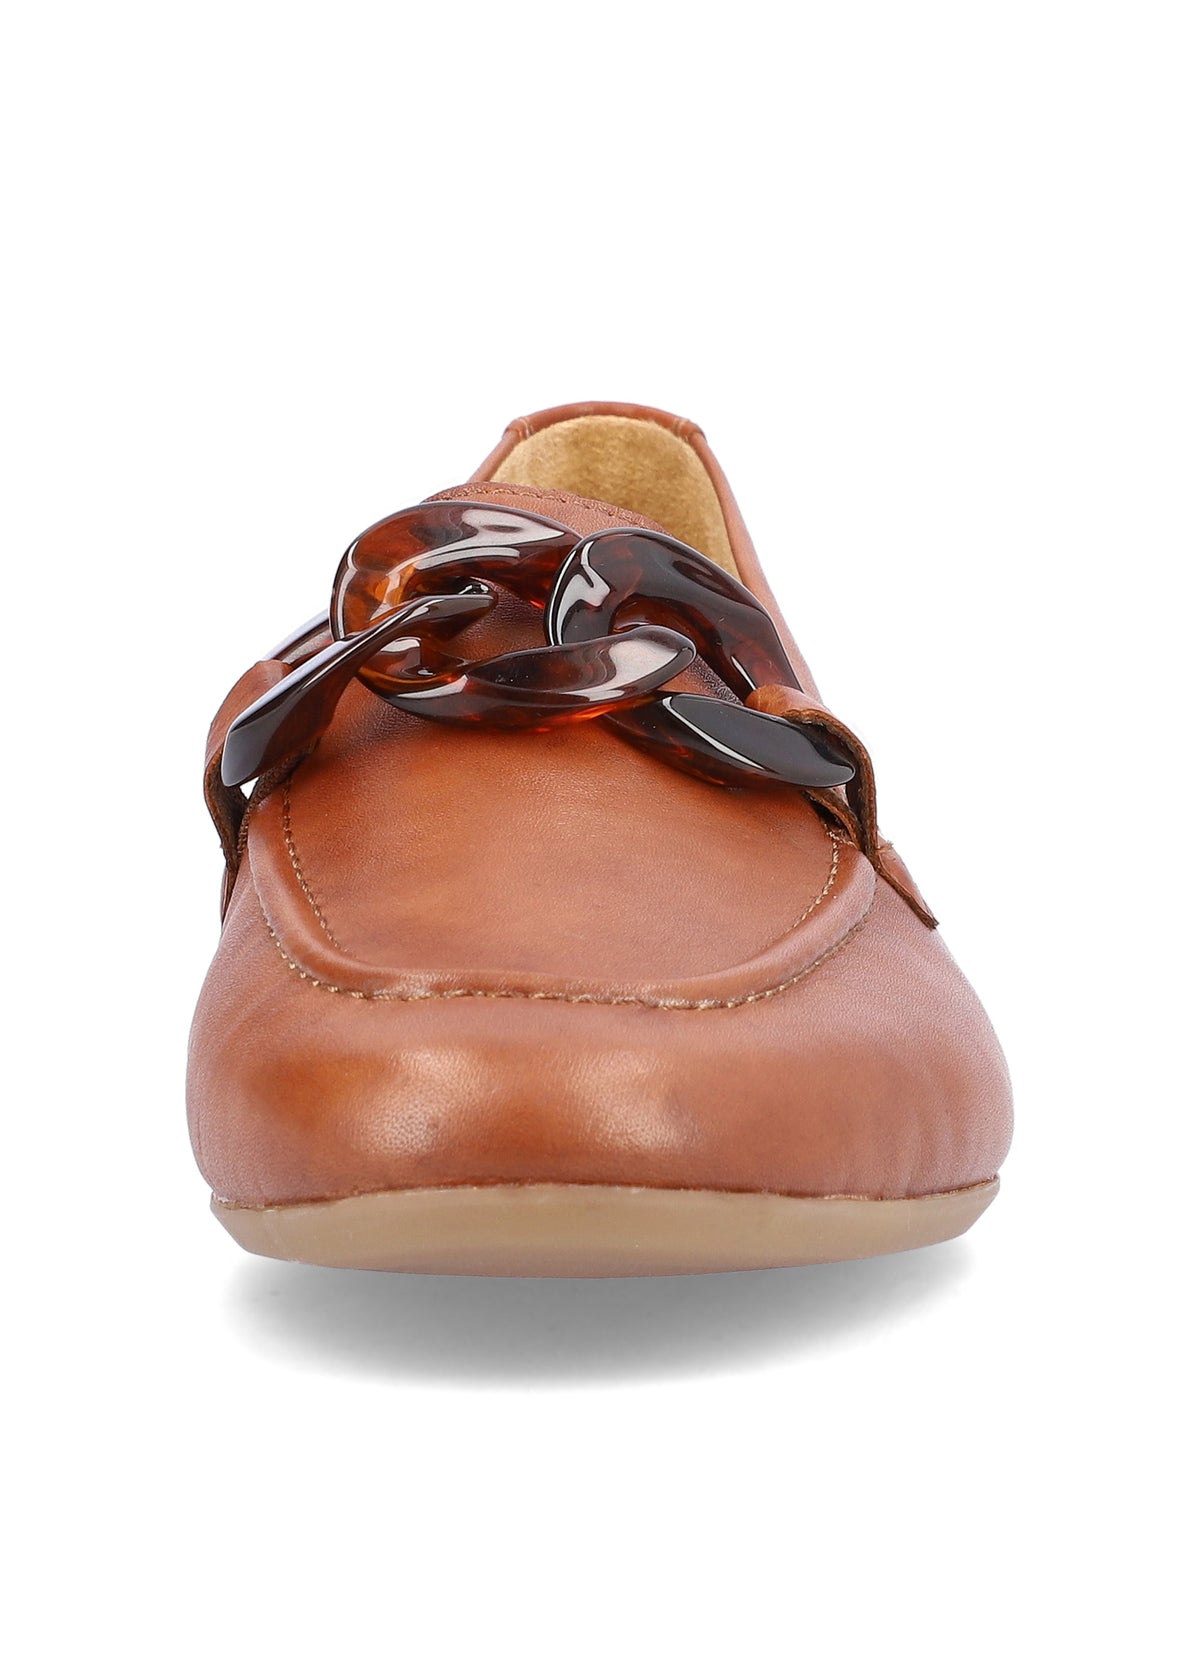 Loafers - brunt toppläder, spänndekoration